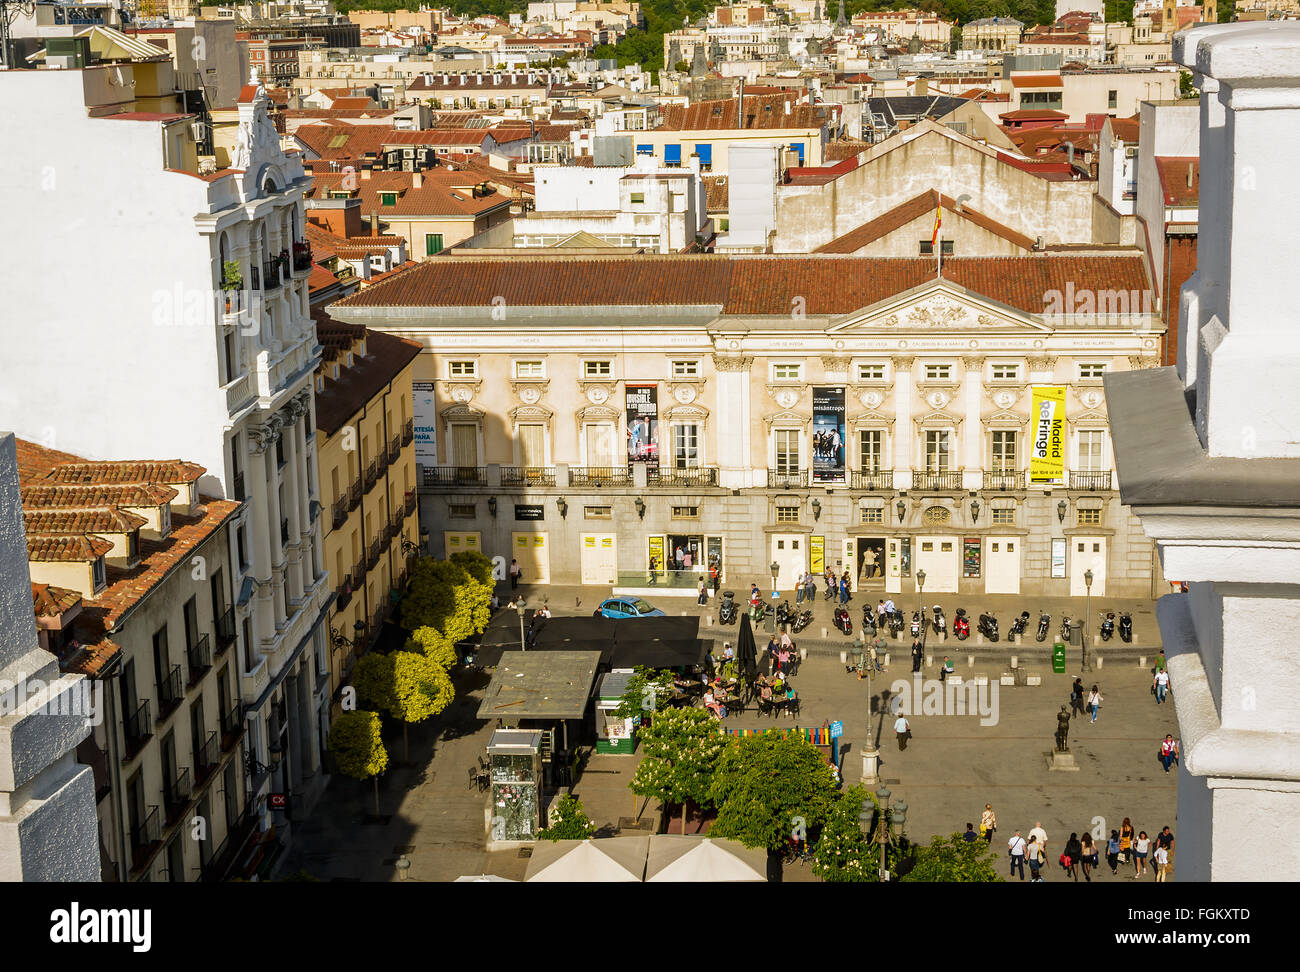 Dans la vue perspective aérienne Saint Ana, Madrid, Espagne Banque D'Images